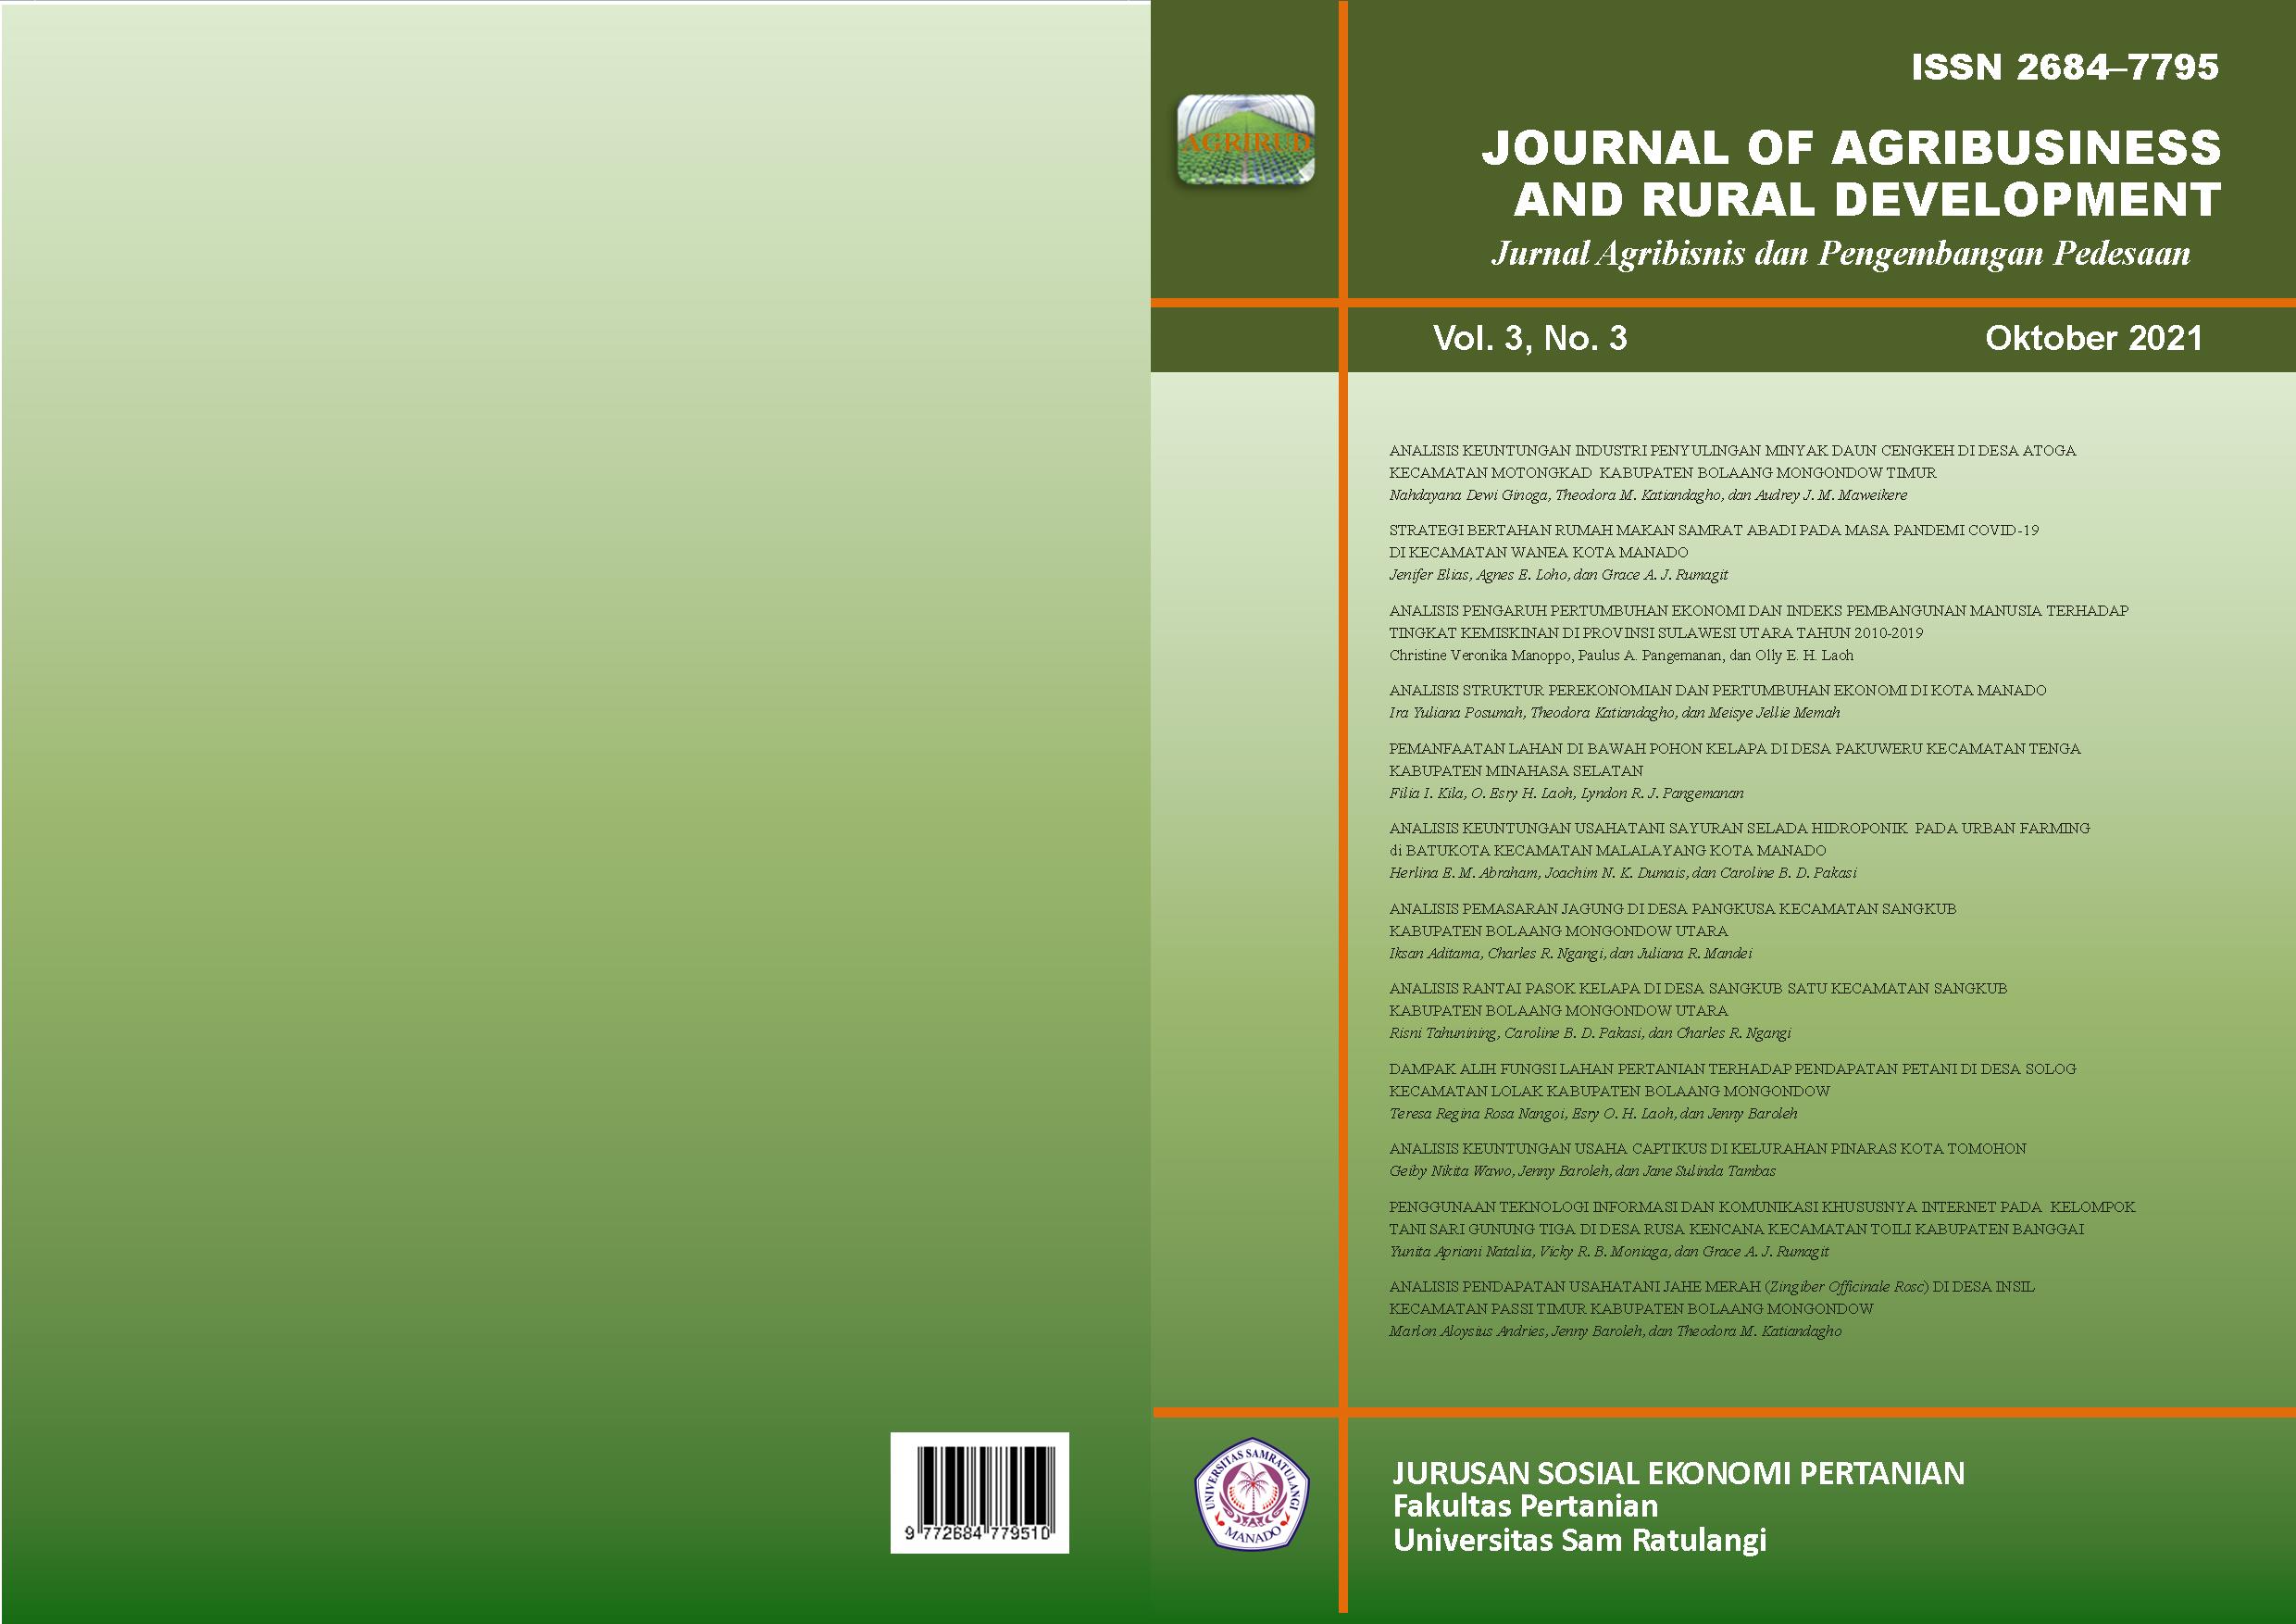 					View Vol. 3 No. 3 (2021): Journal of Agribusiness and Rural Development (Jurnal Agribisnis dan Pengembangan Pedesaan) - Oktober 2021
				